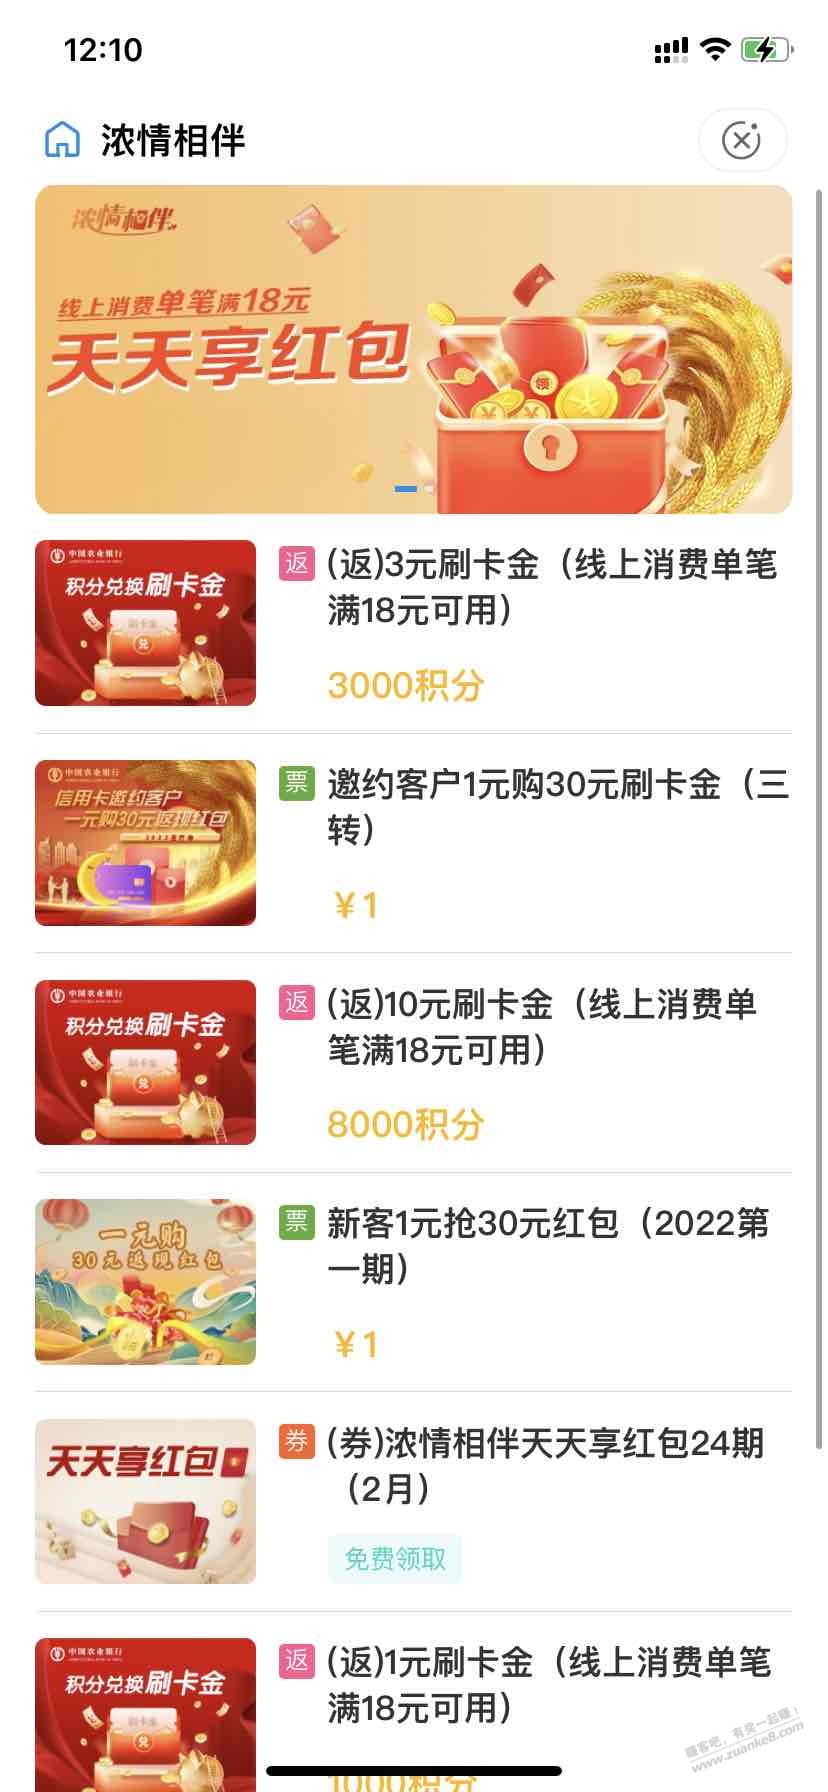 新一个月-农行app-浓情相伴刷卡金-上-惠小助(52huixz.com)